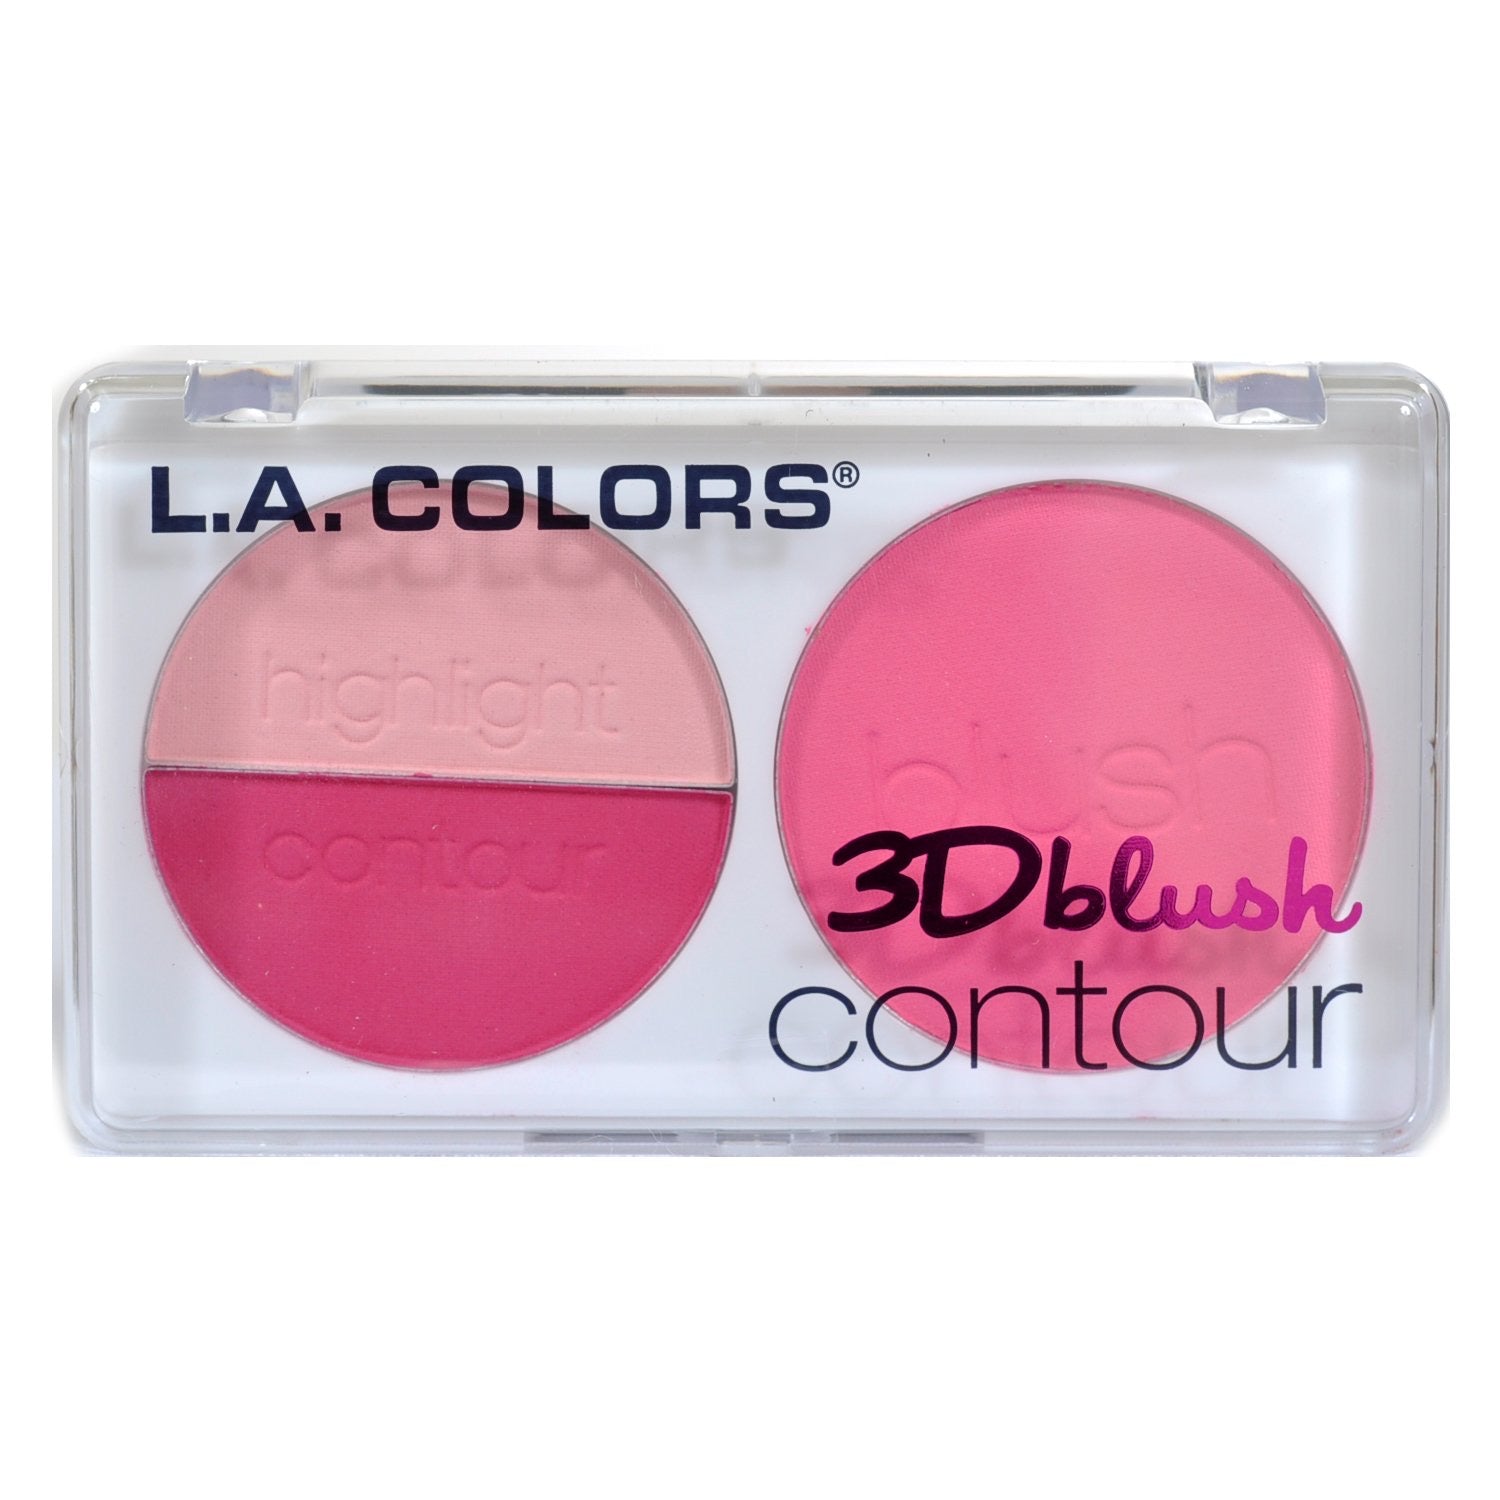 La colors 3d blush contour